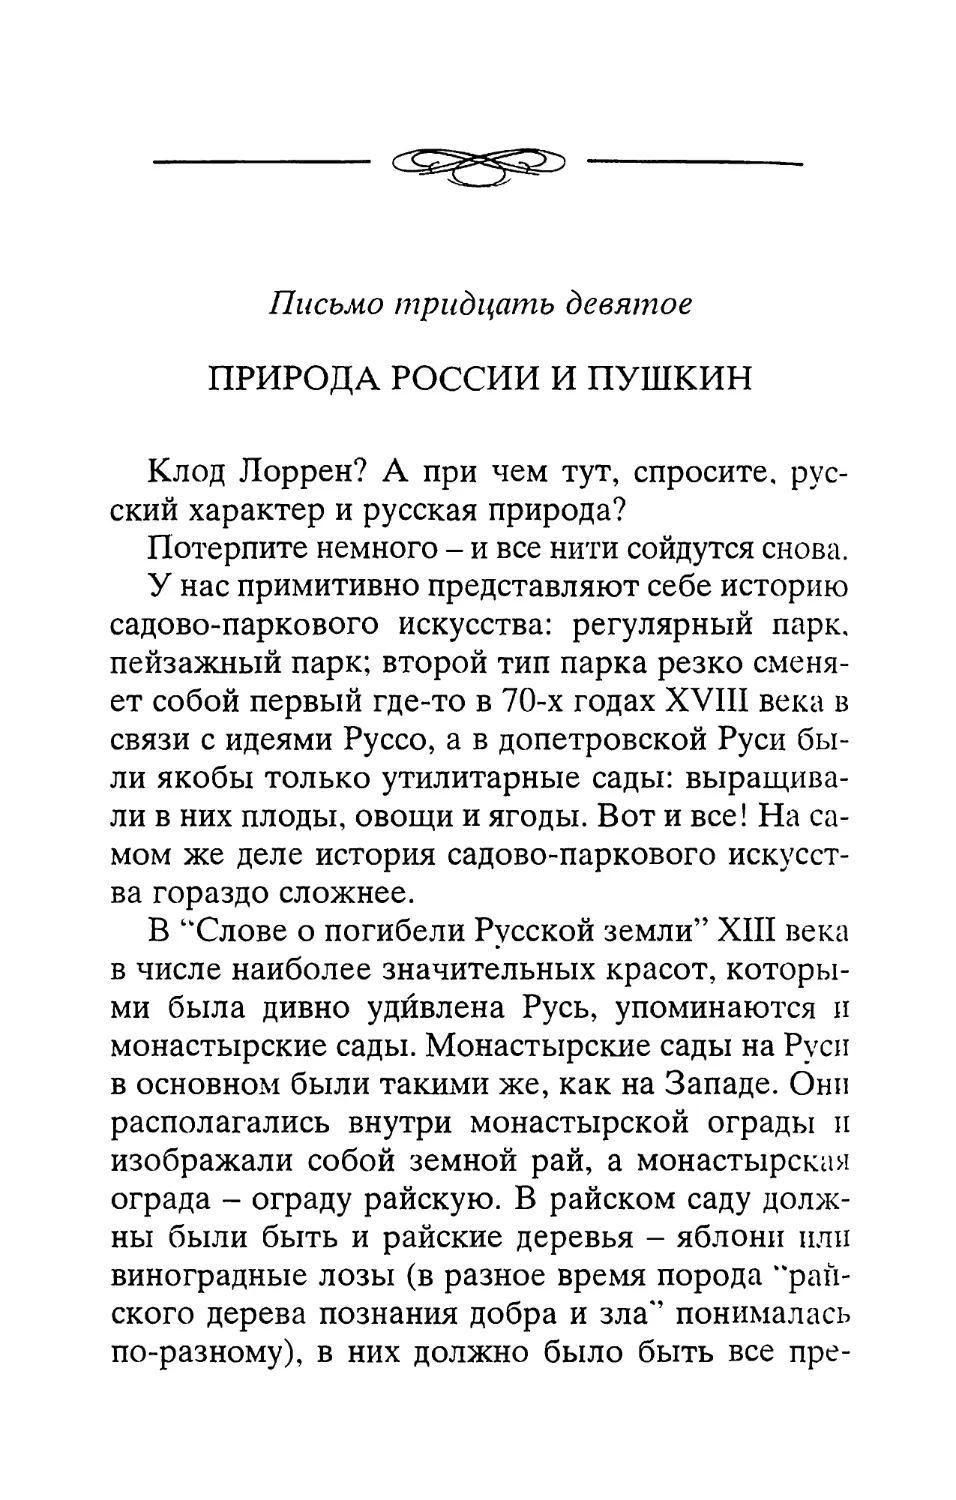 Письмо тридцать девятое. Природа России и Пушкин